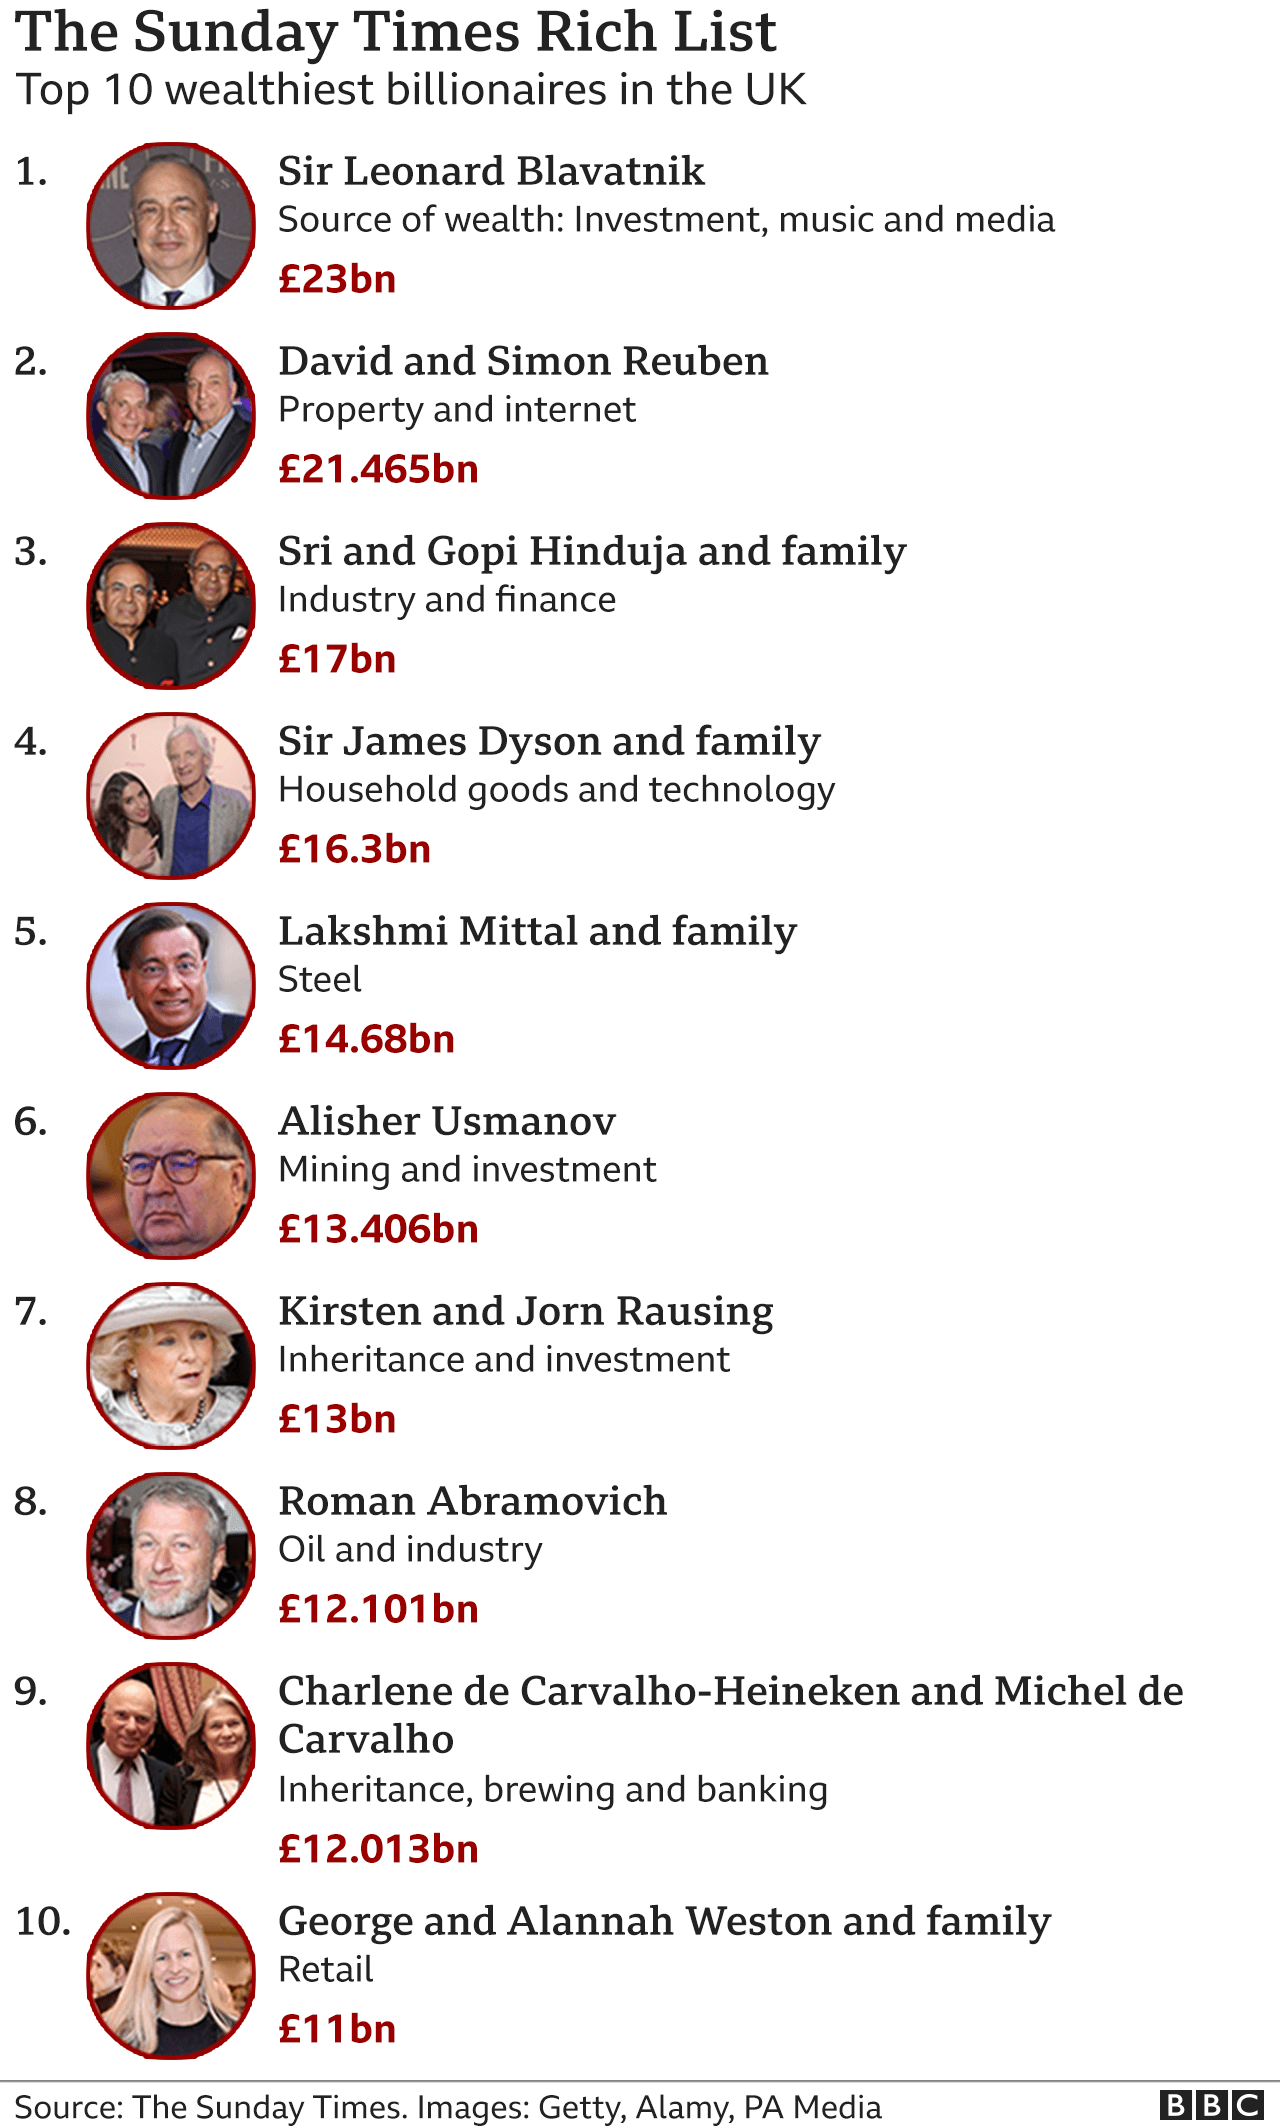 Vejrtrækning Donau Ærlig Leonard Blavatnik named UK's richest person with £23bn fortune - BBC News